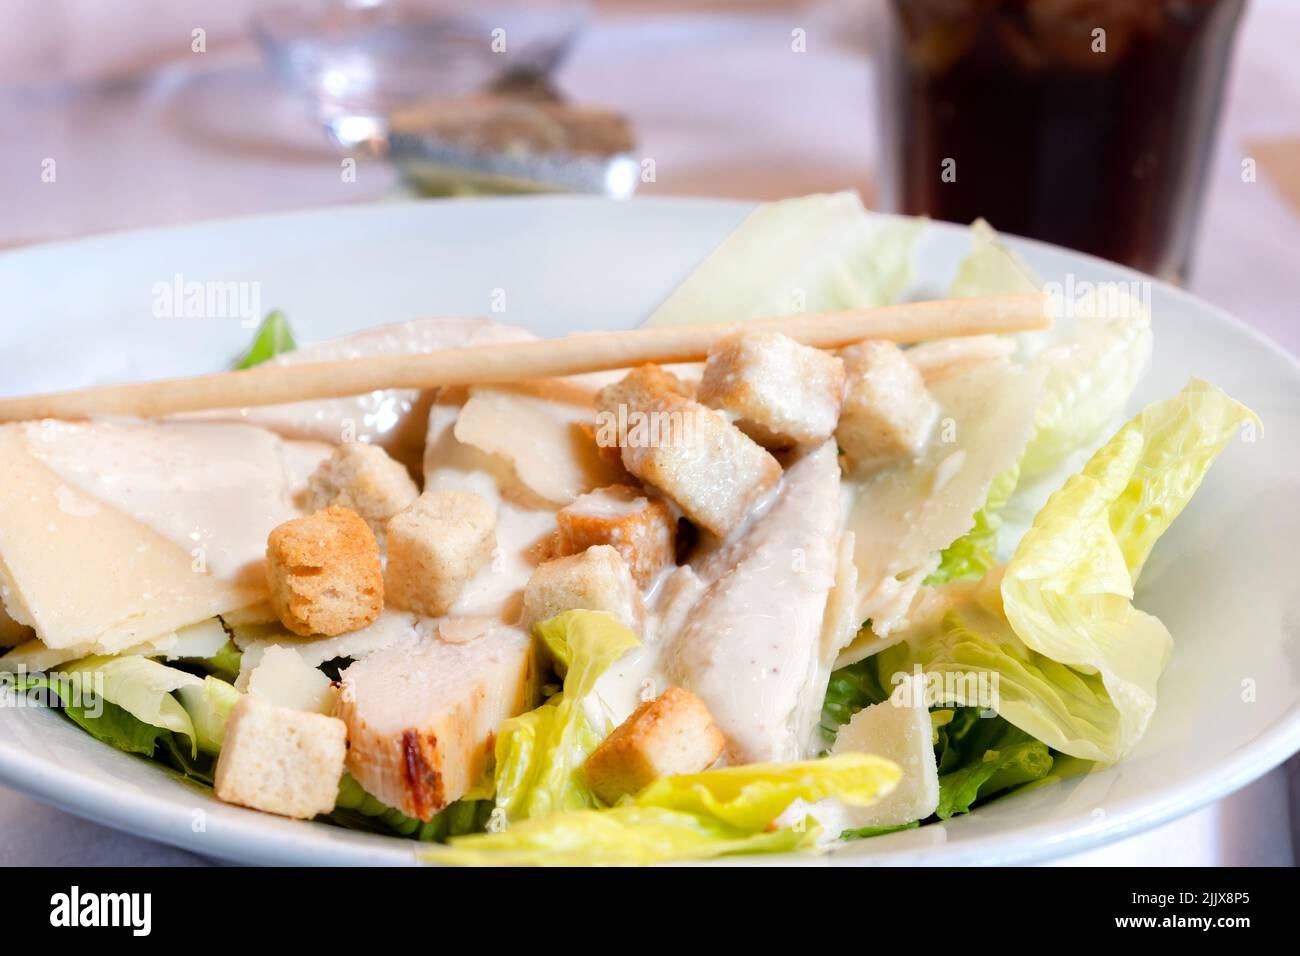 Un piatto, splendidamente presentato classico Caesar Salad servito ad un tavolo da ristorante. L'insalata è condita con una salsa cremosa e crostini Foto Stock